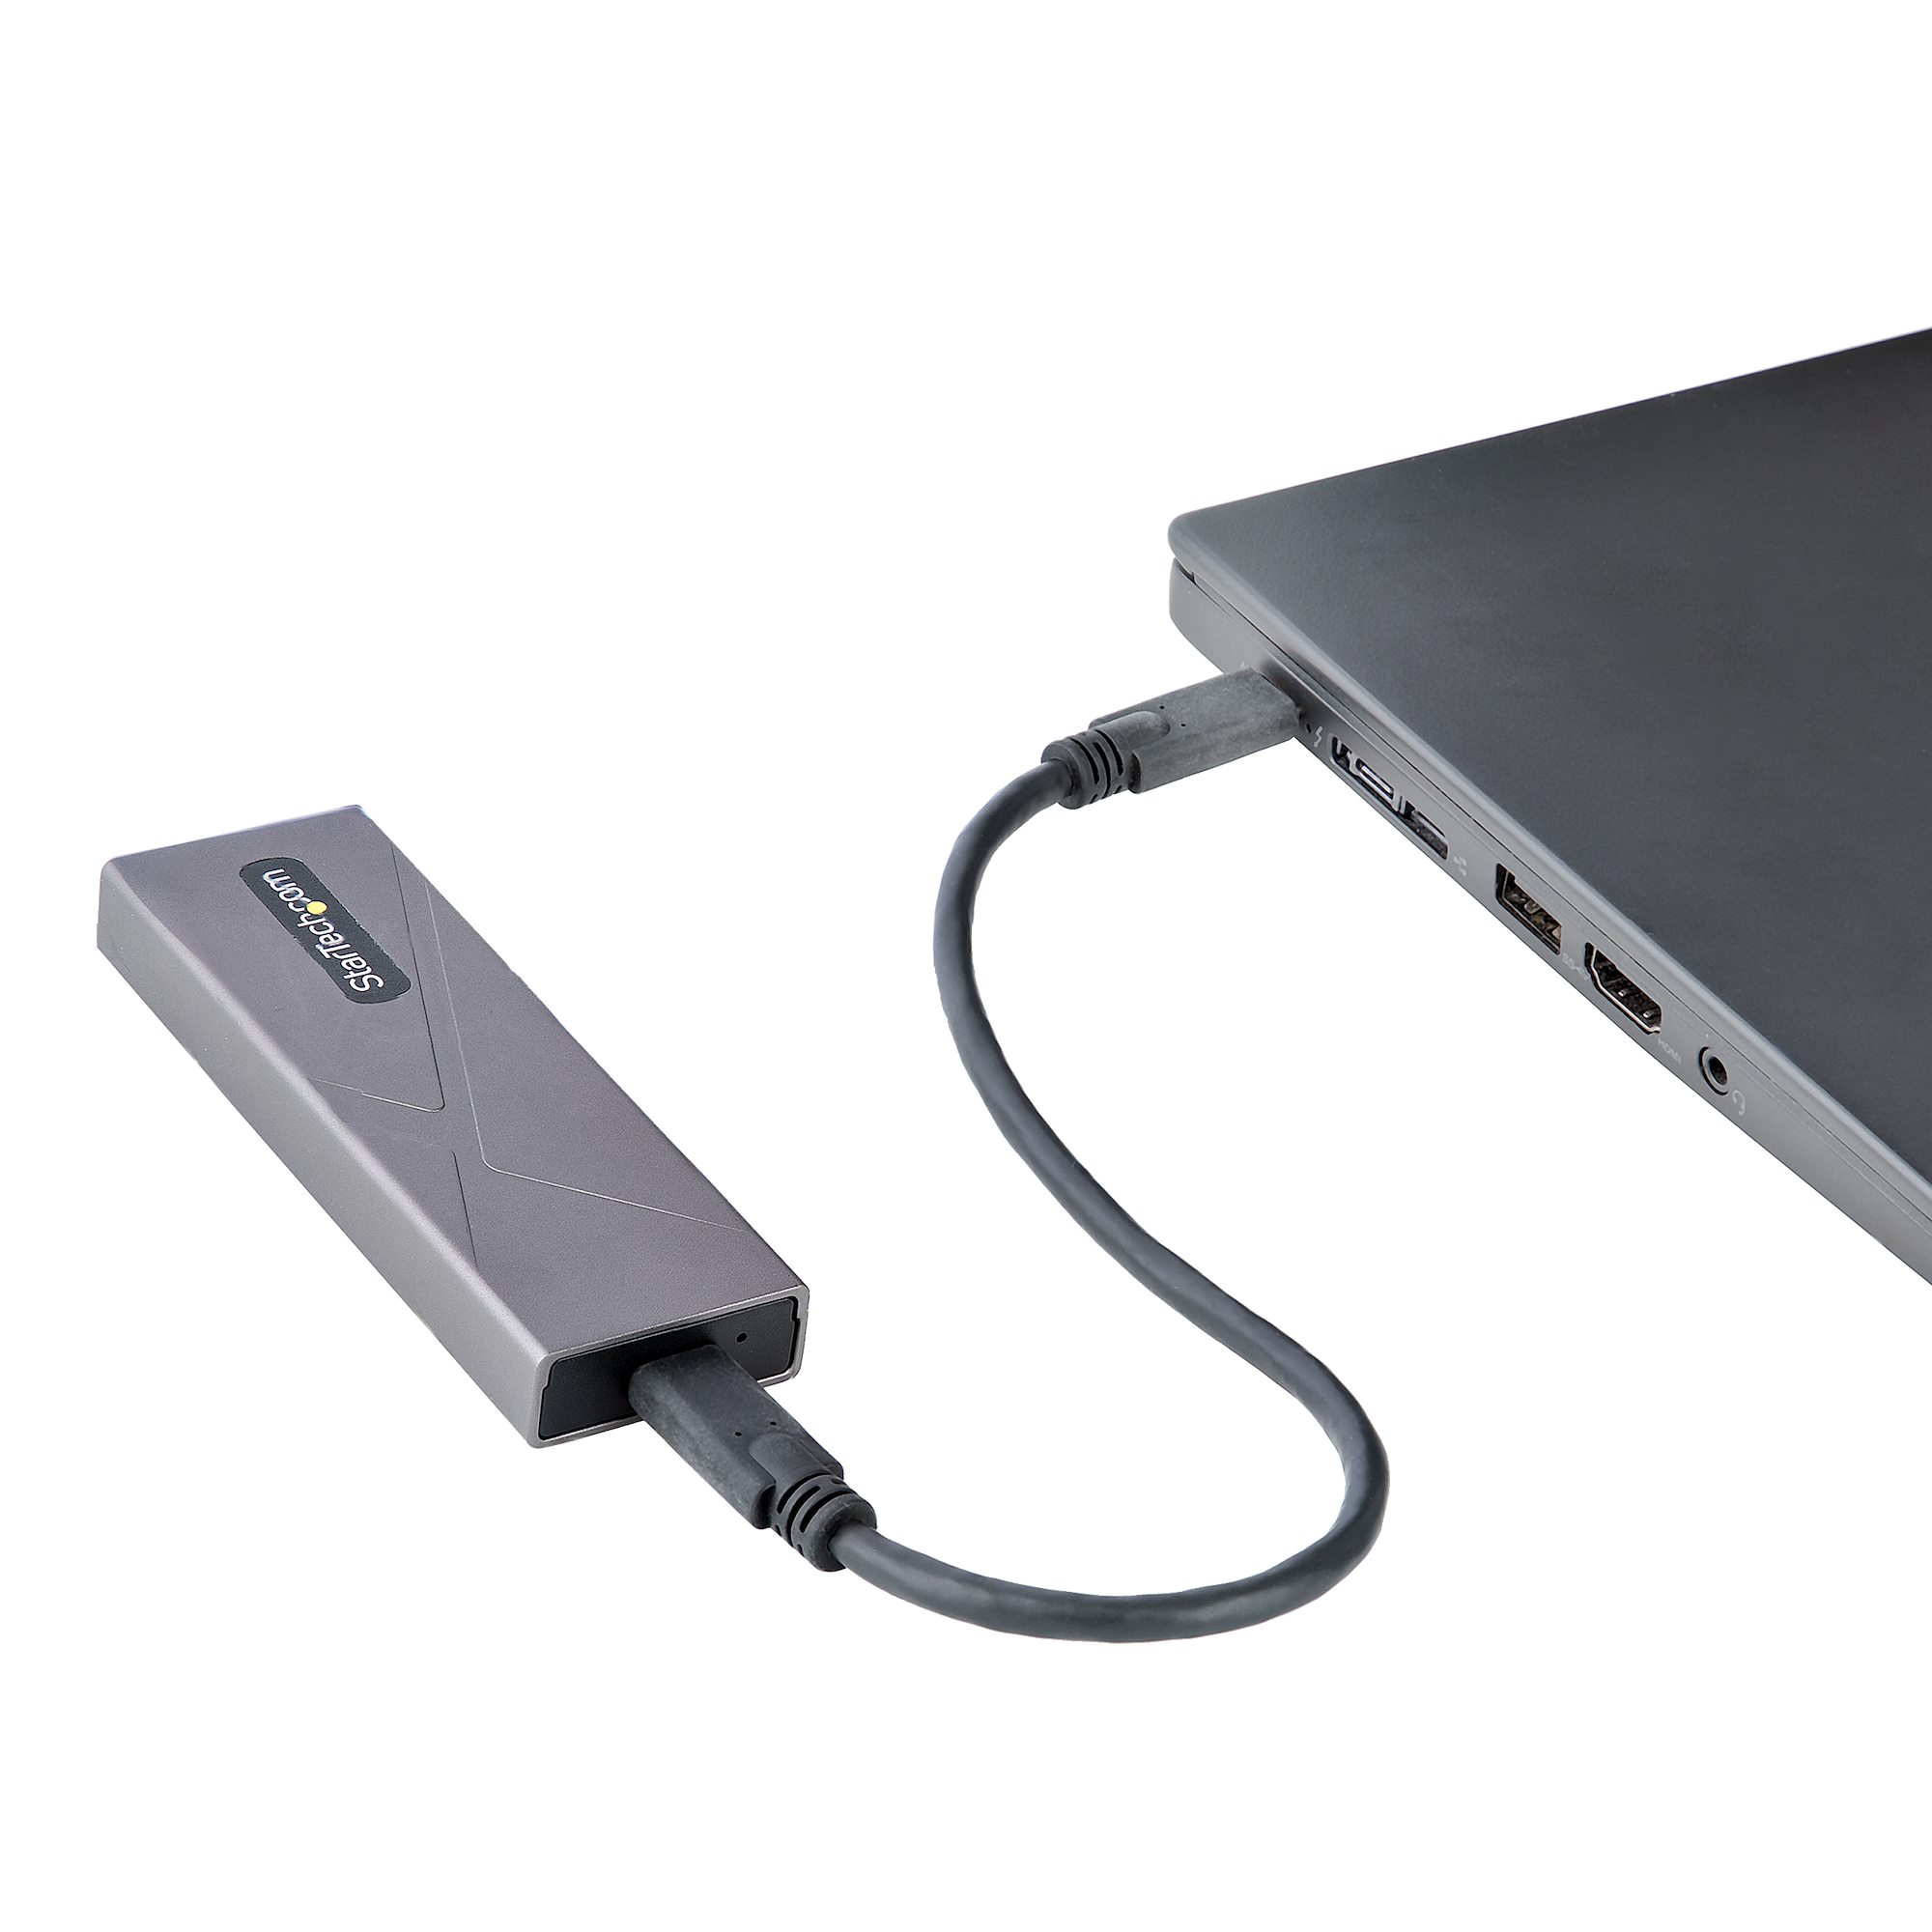 StarTech.com Boitier externe pour SSD M2 SATA avec cable USB-C integre -  Lecteur de disque